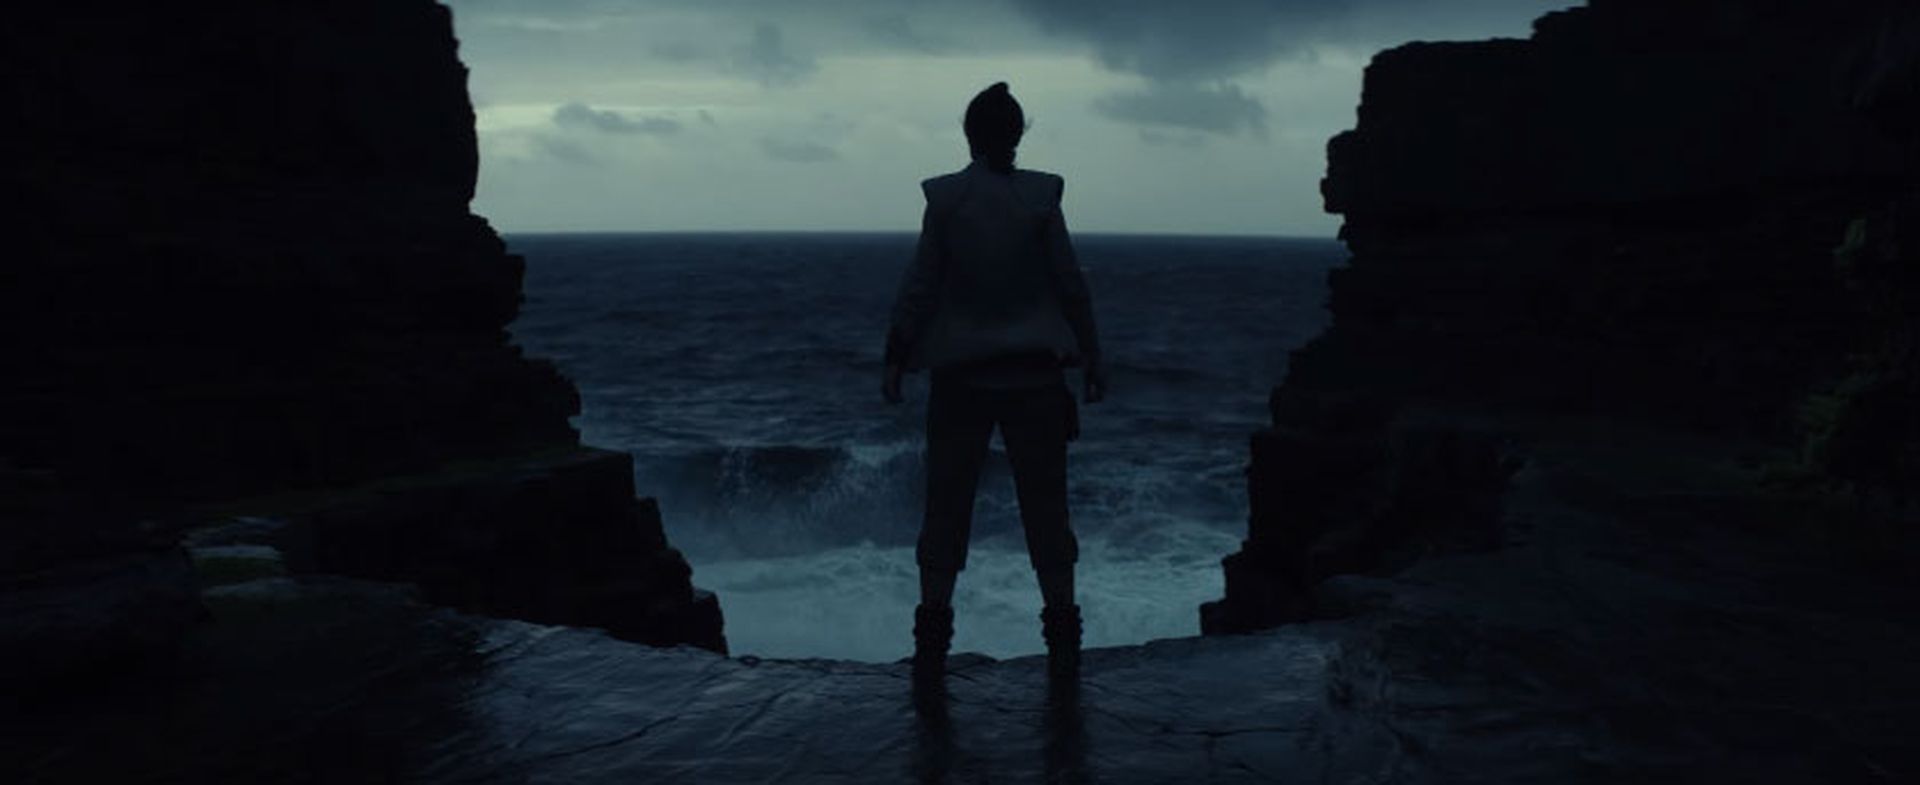 Star Wars- Episodio VIII - Los últimos Jedi - Imágenes del teaser tráiler